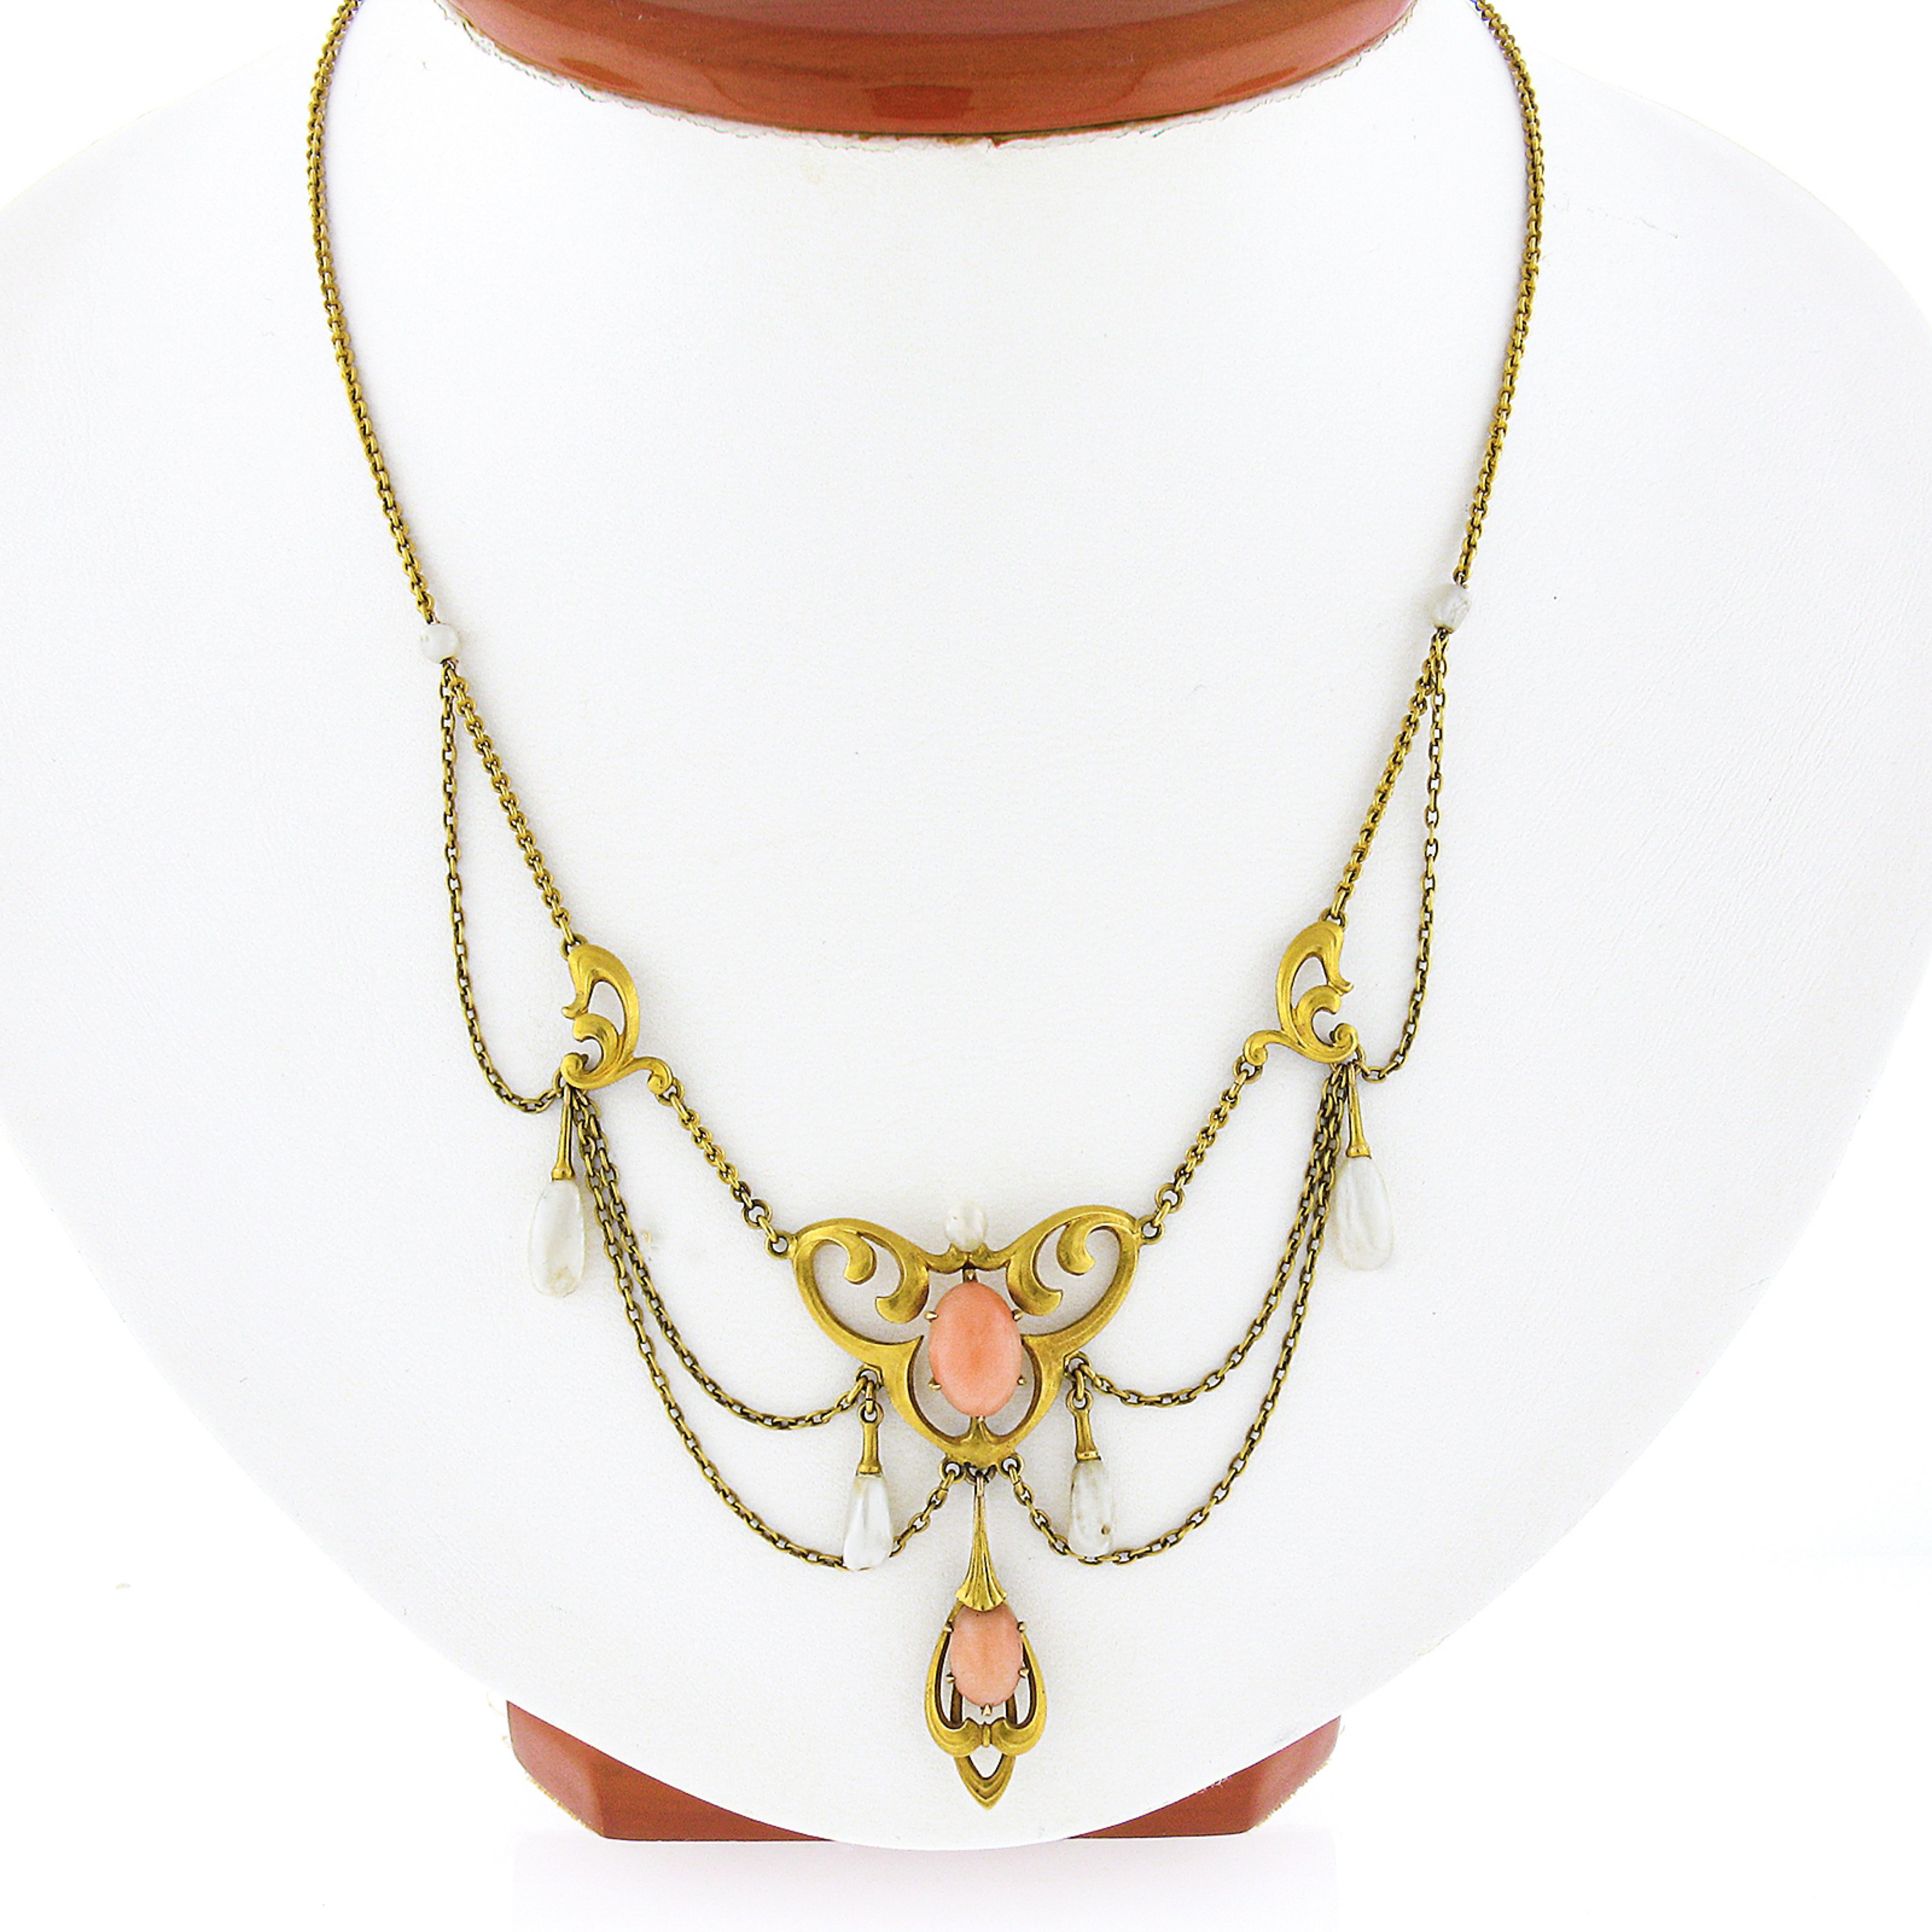 Voici un magnifique collier ancien en or jaune 14 carats, conçu par Krementz et datant de la période Art Nouveau. Ce collier présente un élégant motif ouvert au centre de la chaîne câblée, dans laquelle sont soigneusement serties deux pierres de